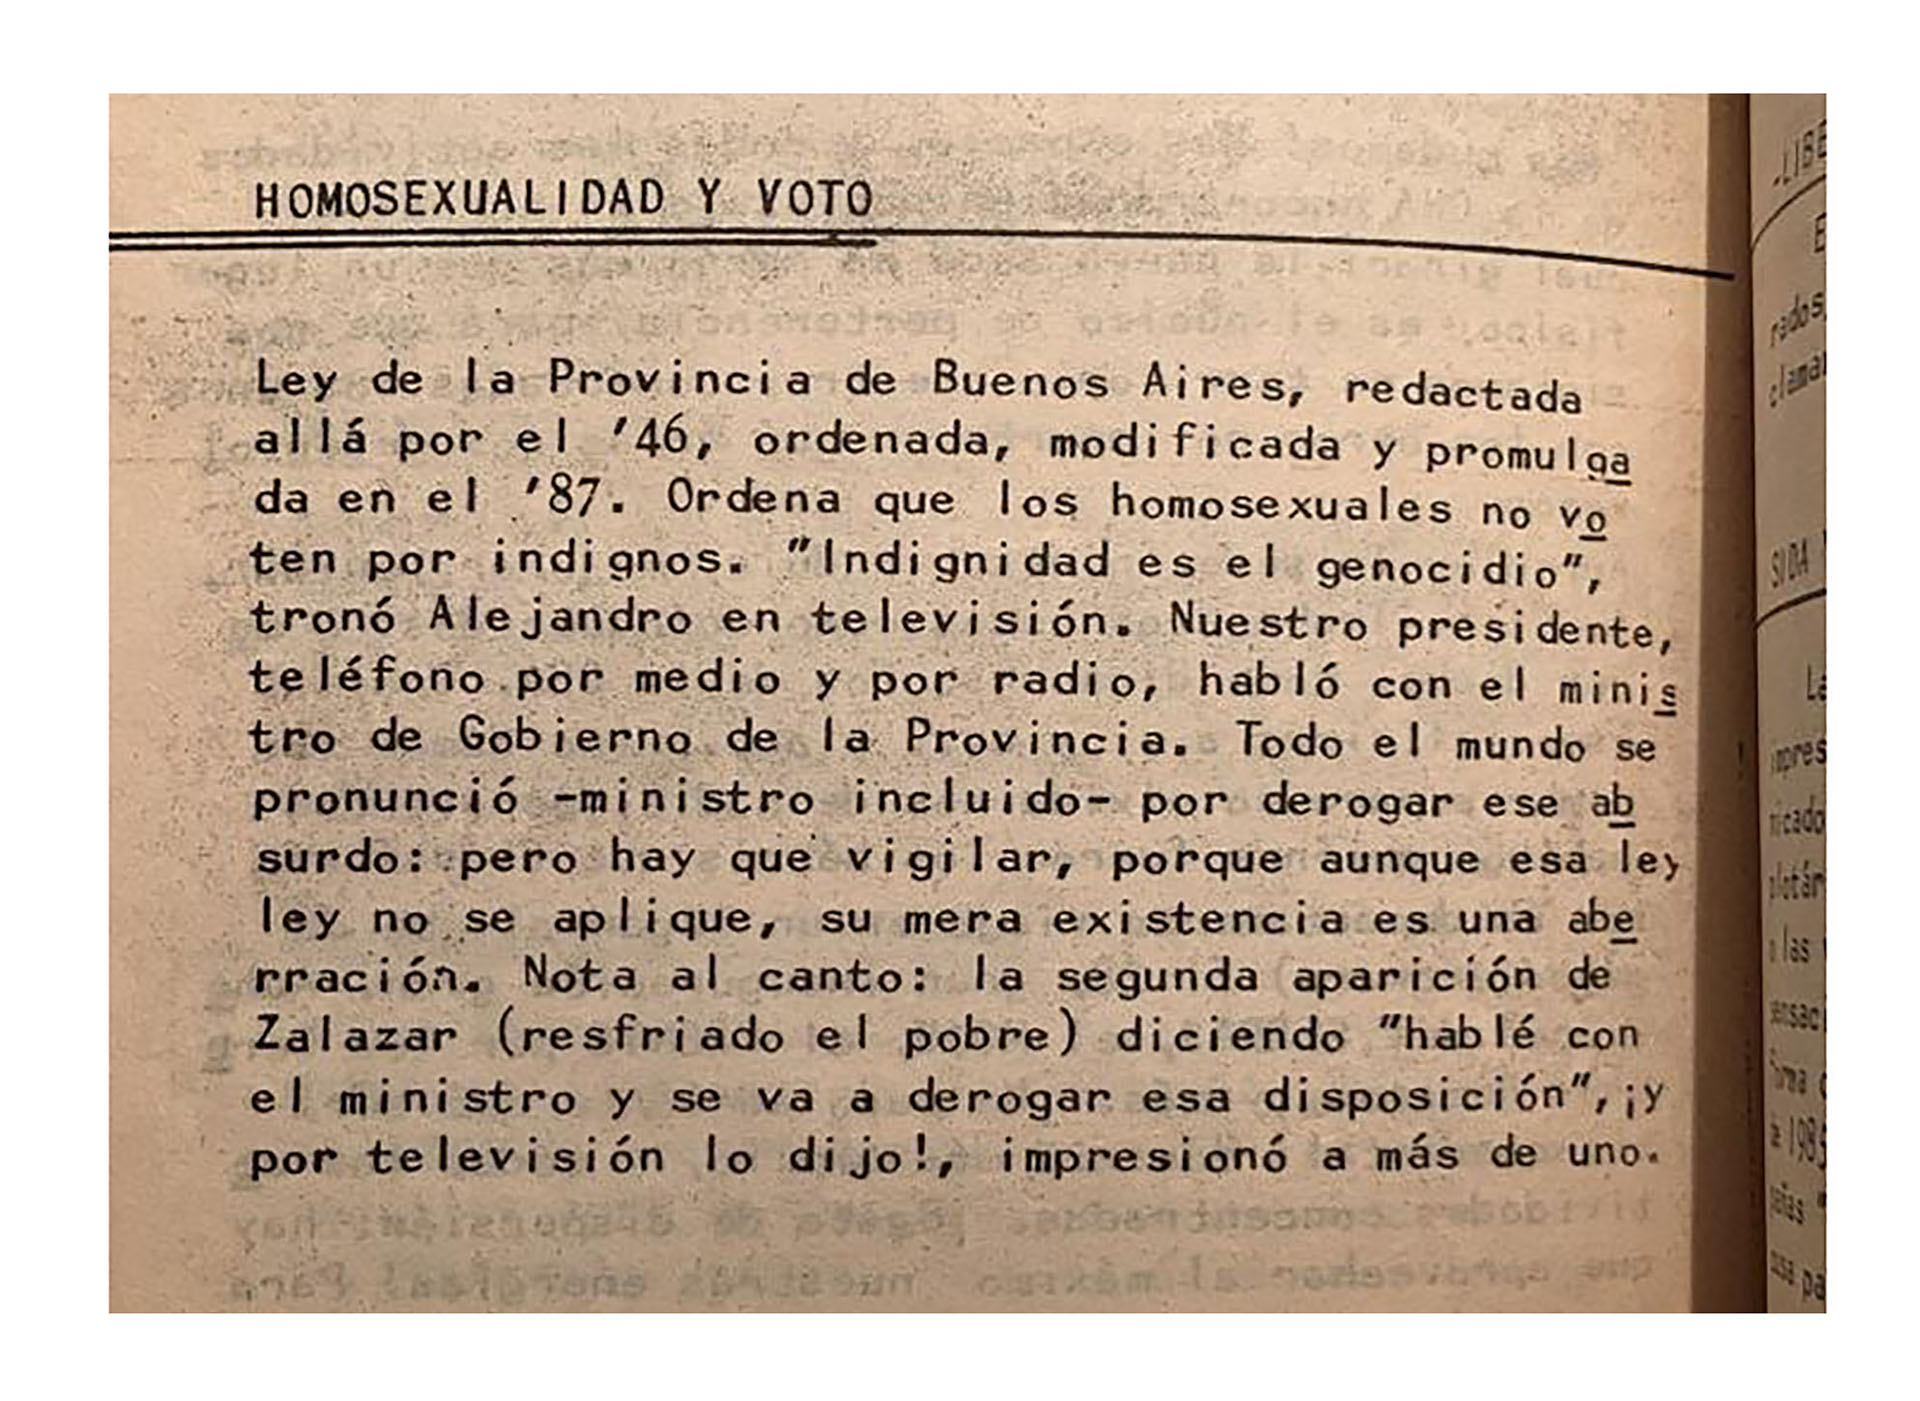 Un documento interno de la Comunidad Homosexual Argentina condenando la ley y dando cuenta de las gestiones del activismo con el gobierno de la Provincia para derogarla (Crédito: Archivos Desviados).